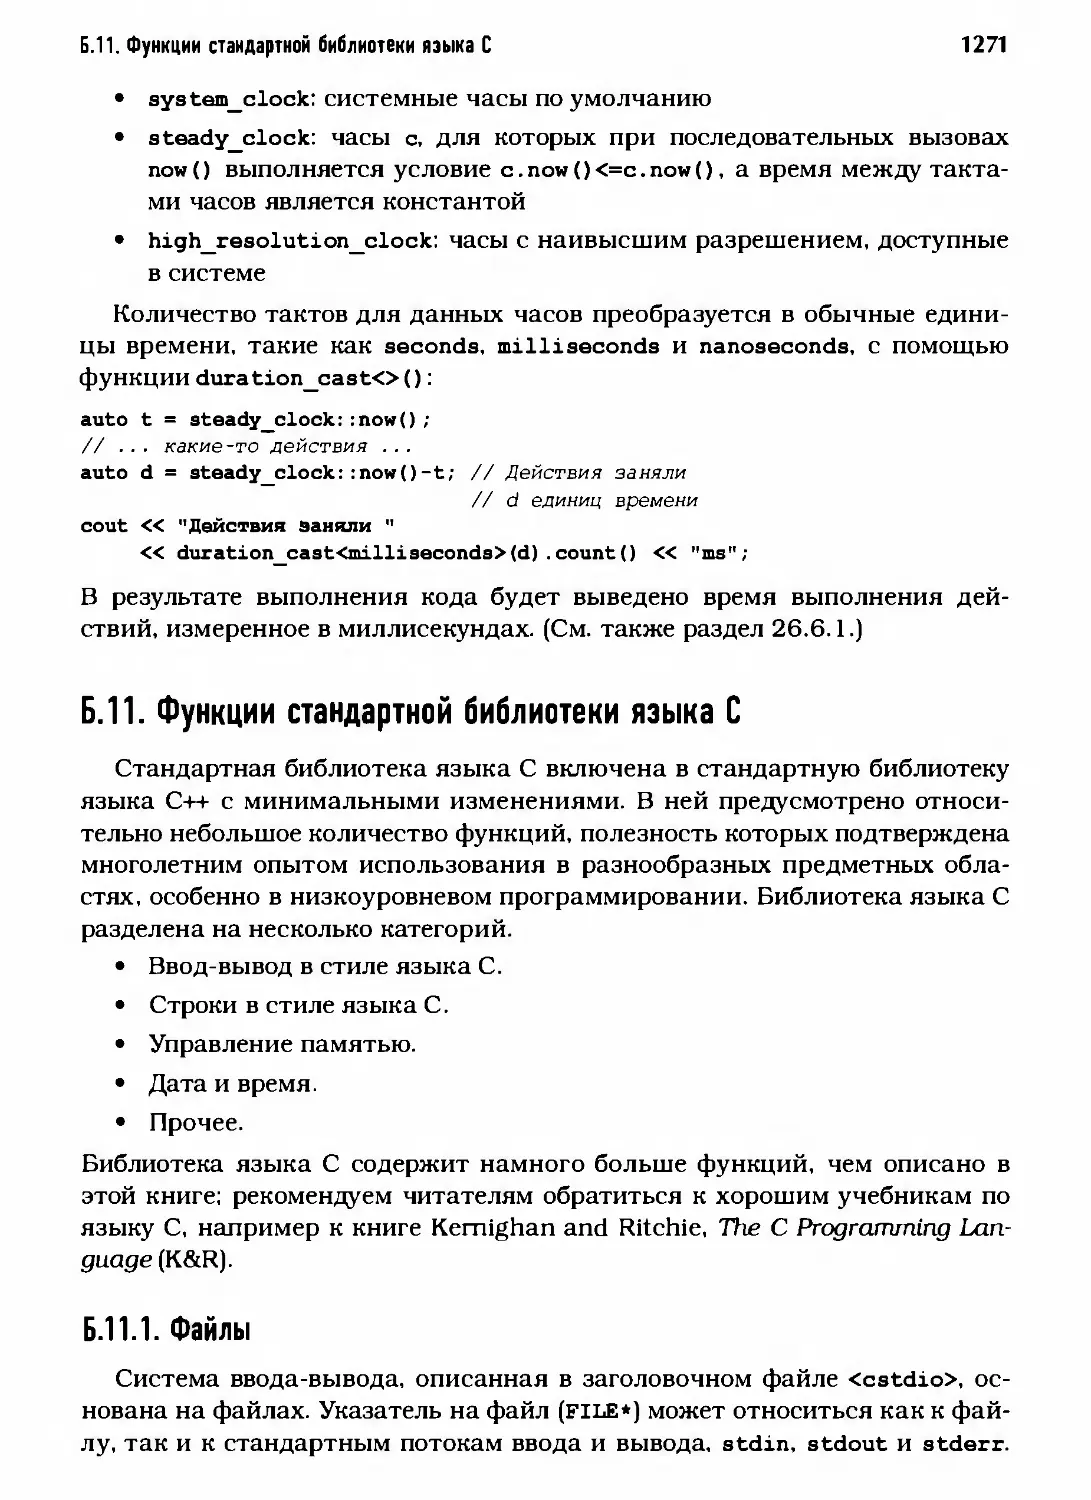 Б.11. Функции стандартной библиотеки языка С